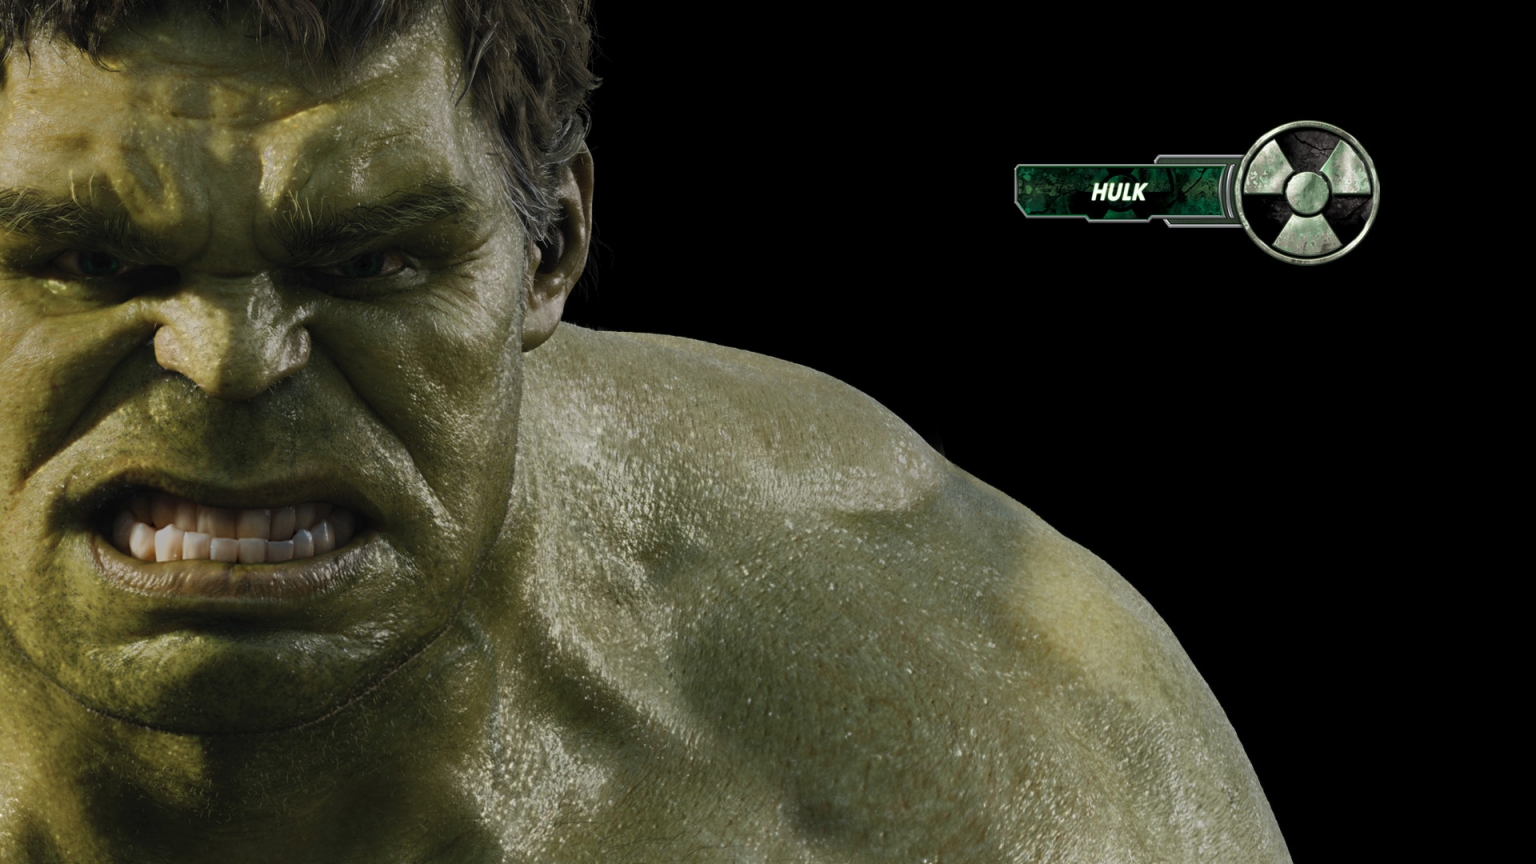 The Avengers Hulk for 1536 x 864 HDTV resolution